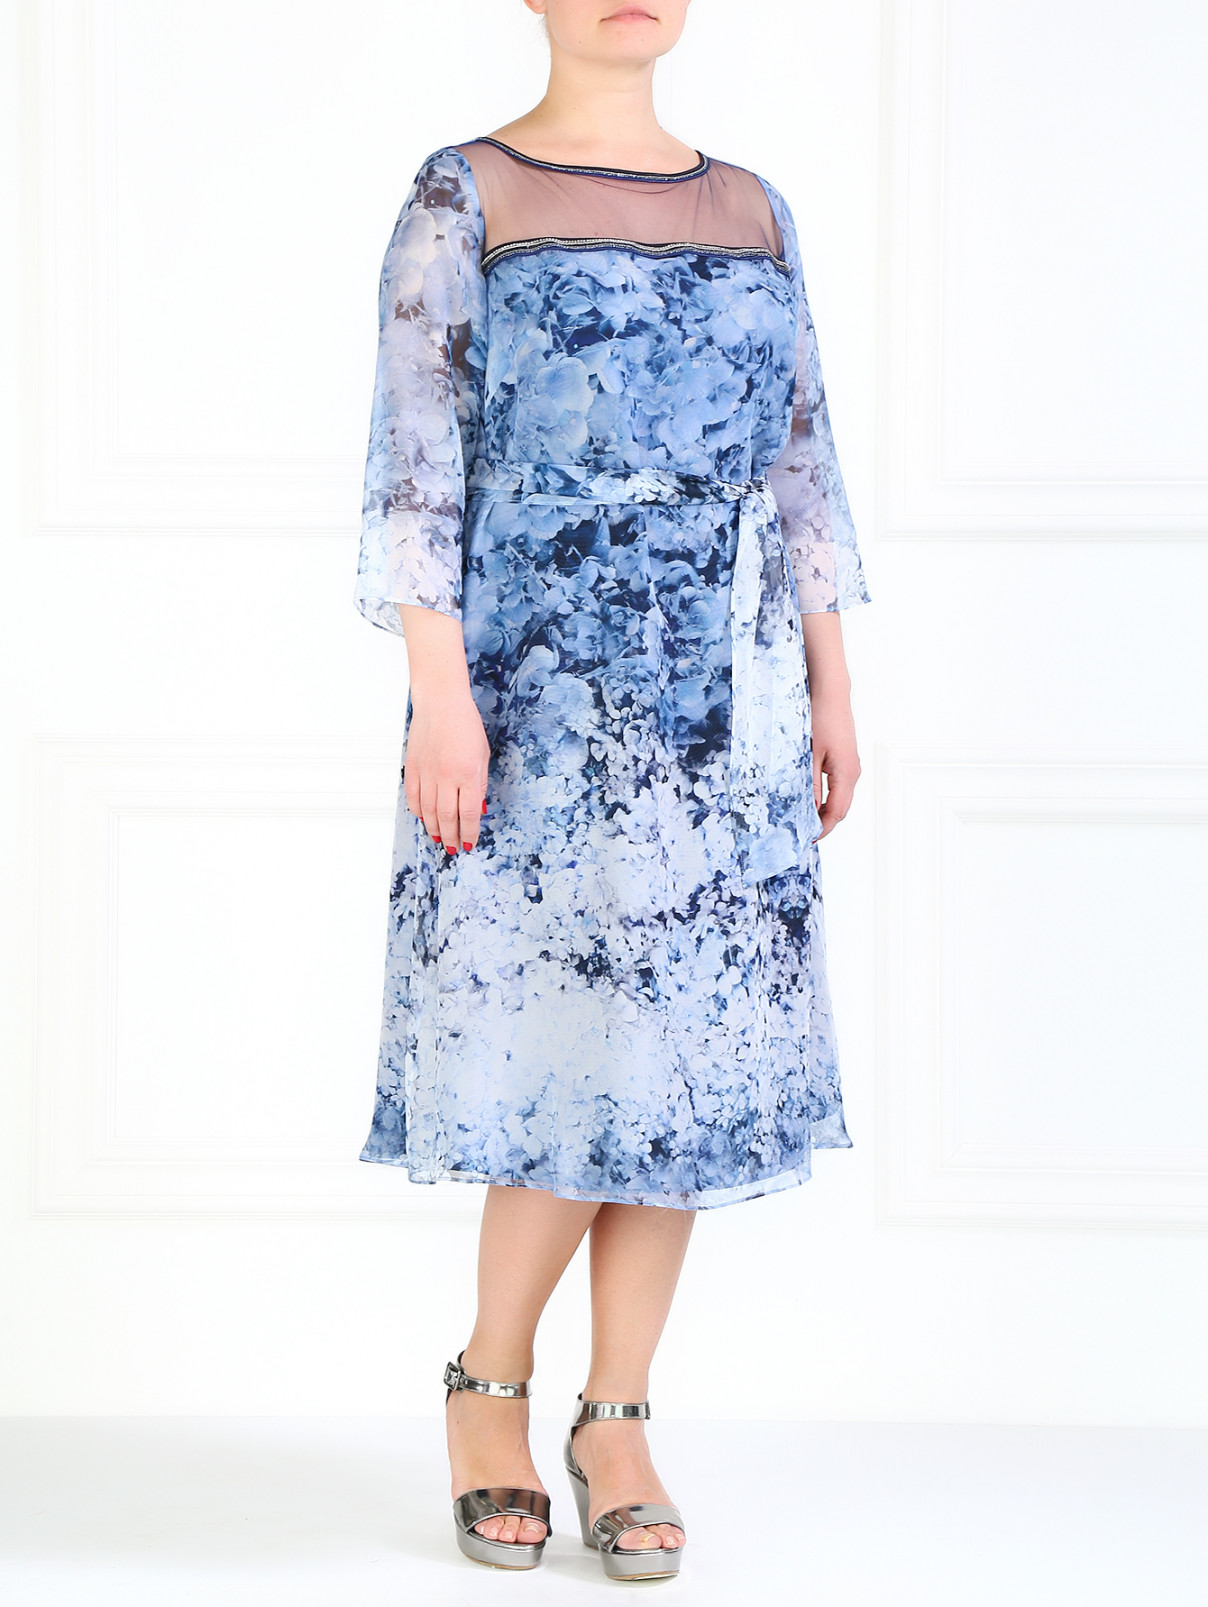 Шелковое платье с цветочным принтом Marina Rinaldi  –  Общий вид  – Цвет:  Узор